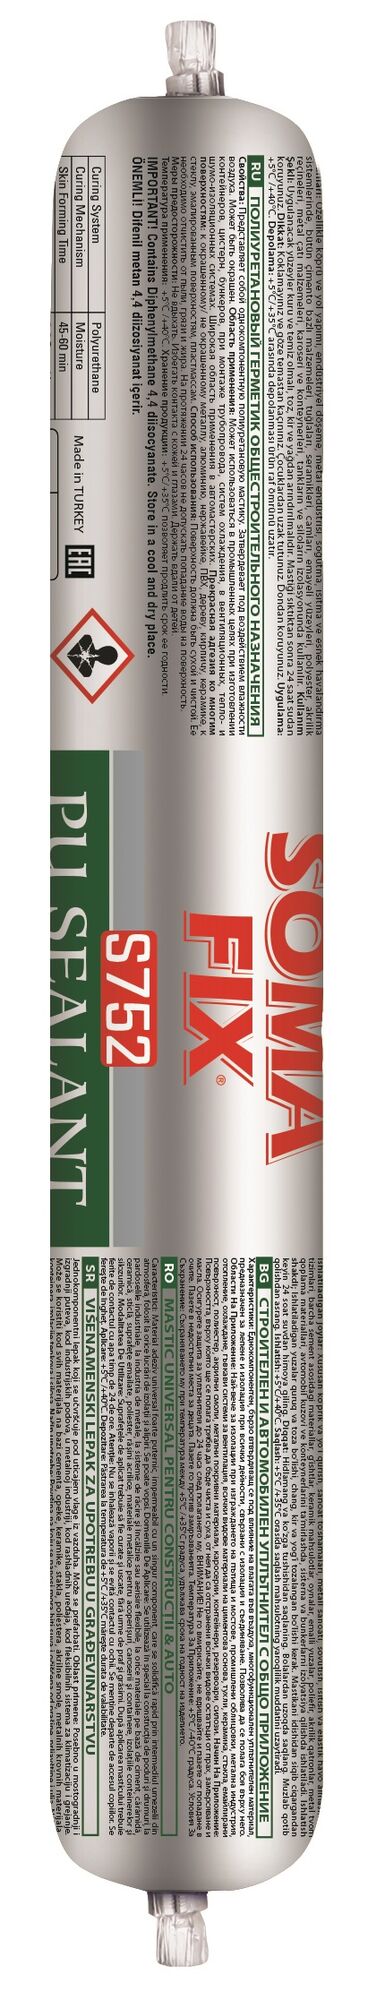 Герметик SOMA FIX полиуретановый, общестроительный (коричневый), 600 мл